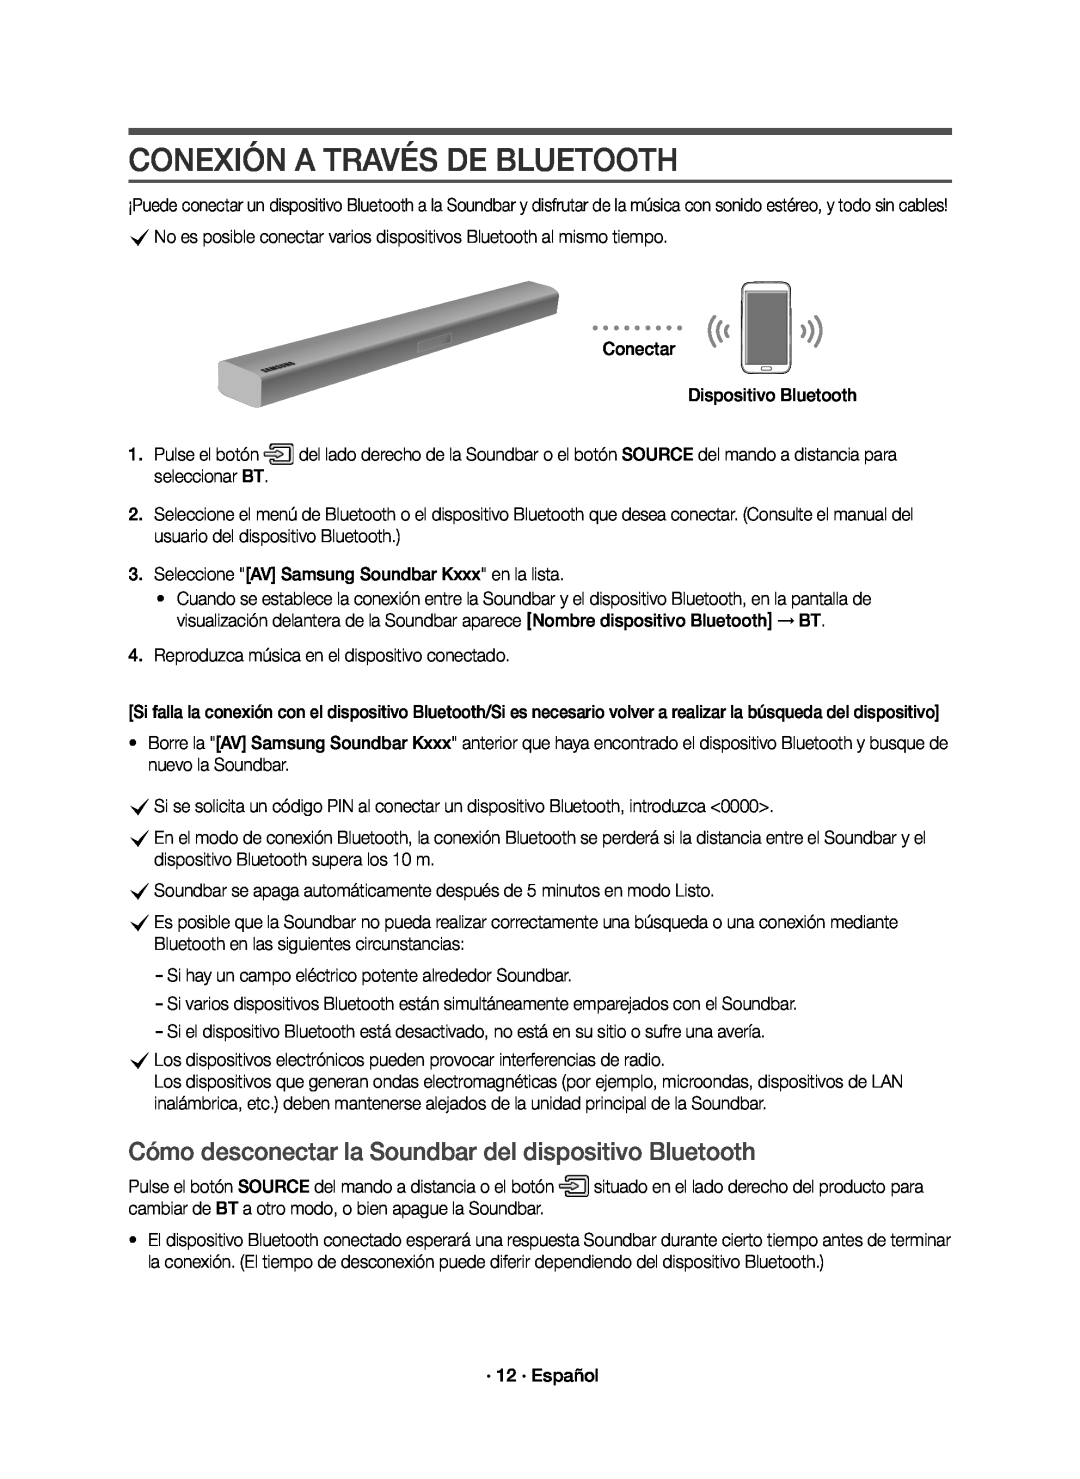 Samsung HW-K651/ZF, HW-K650/ZF manual Conexión A Través De Bluetooth, Cómo desconectar la Soundbar del dispositivo Bluetooth 